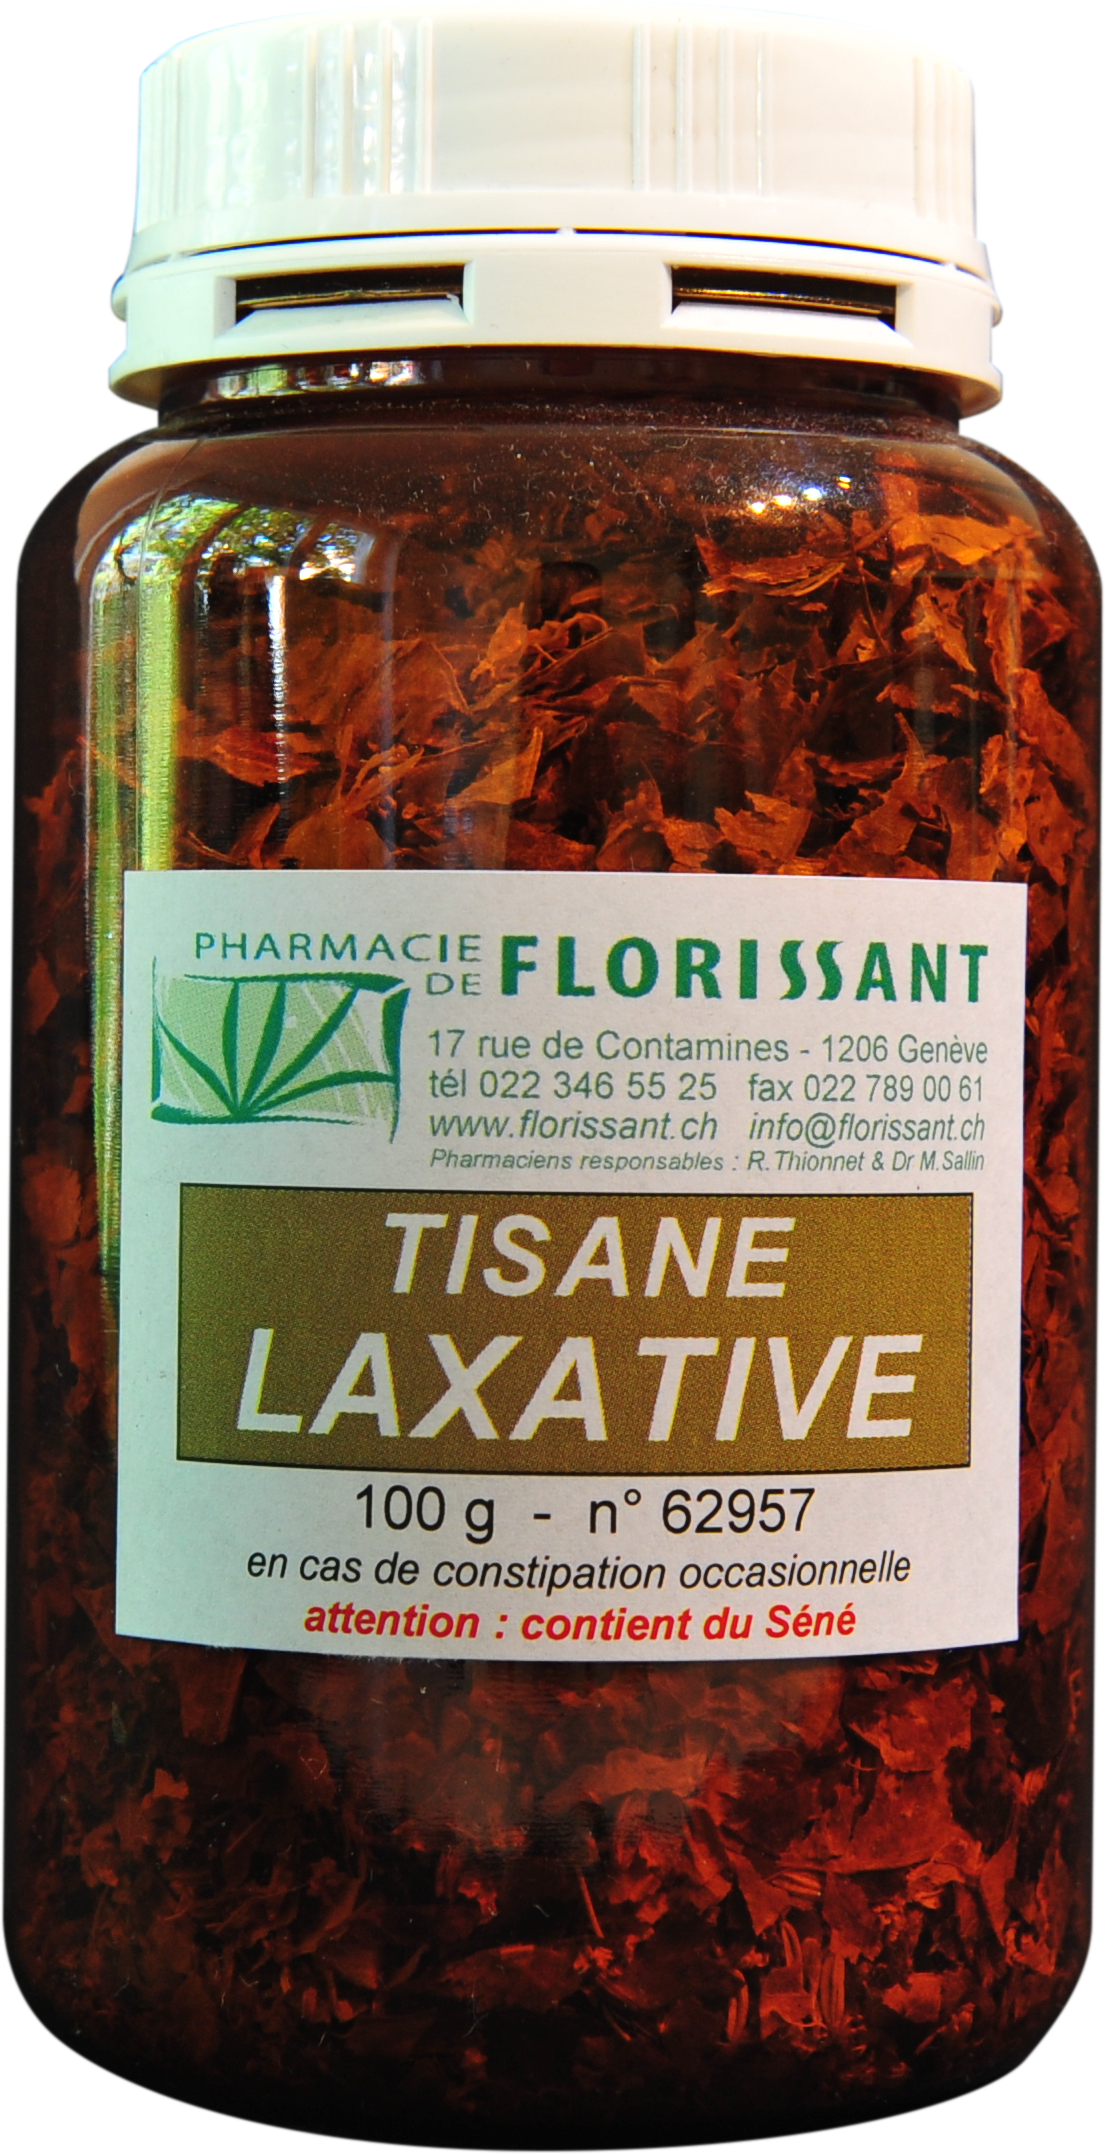 Tisane dépurative légèrement laxative – Pharmacie Parvais